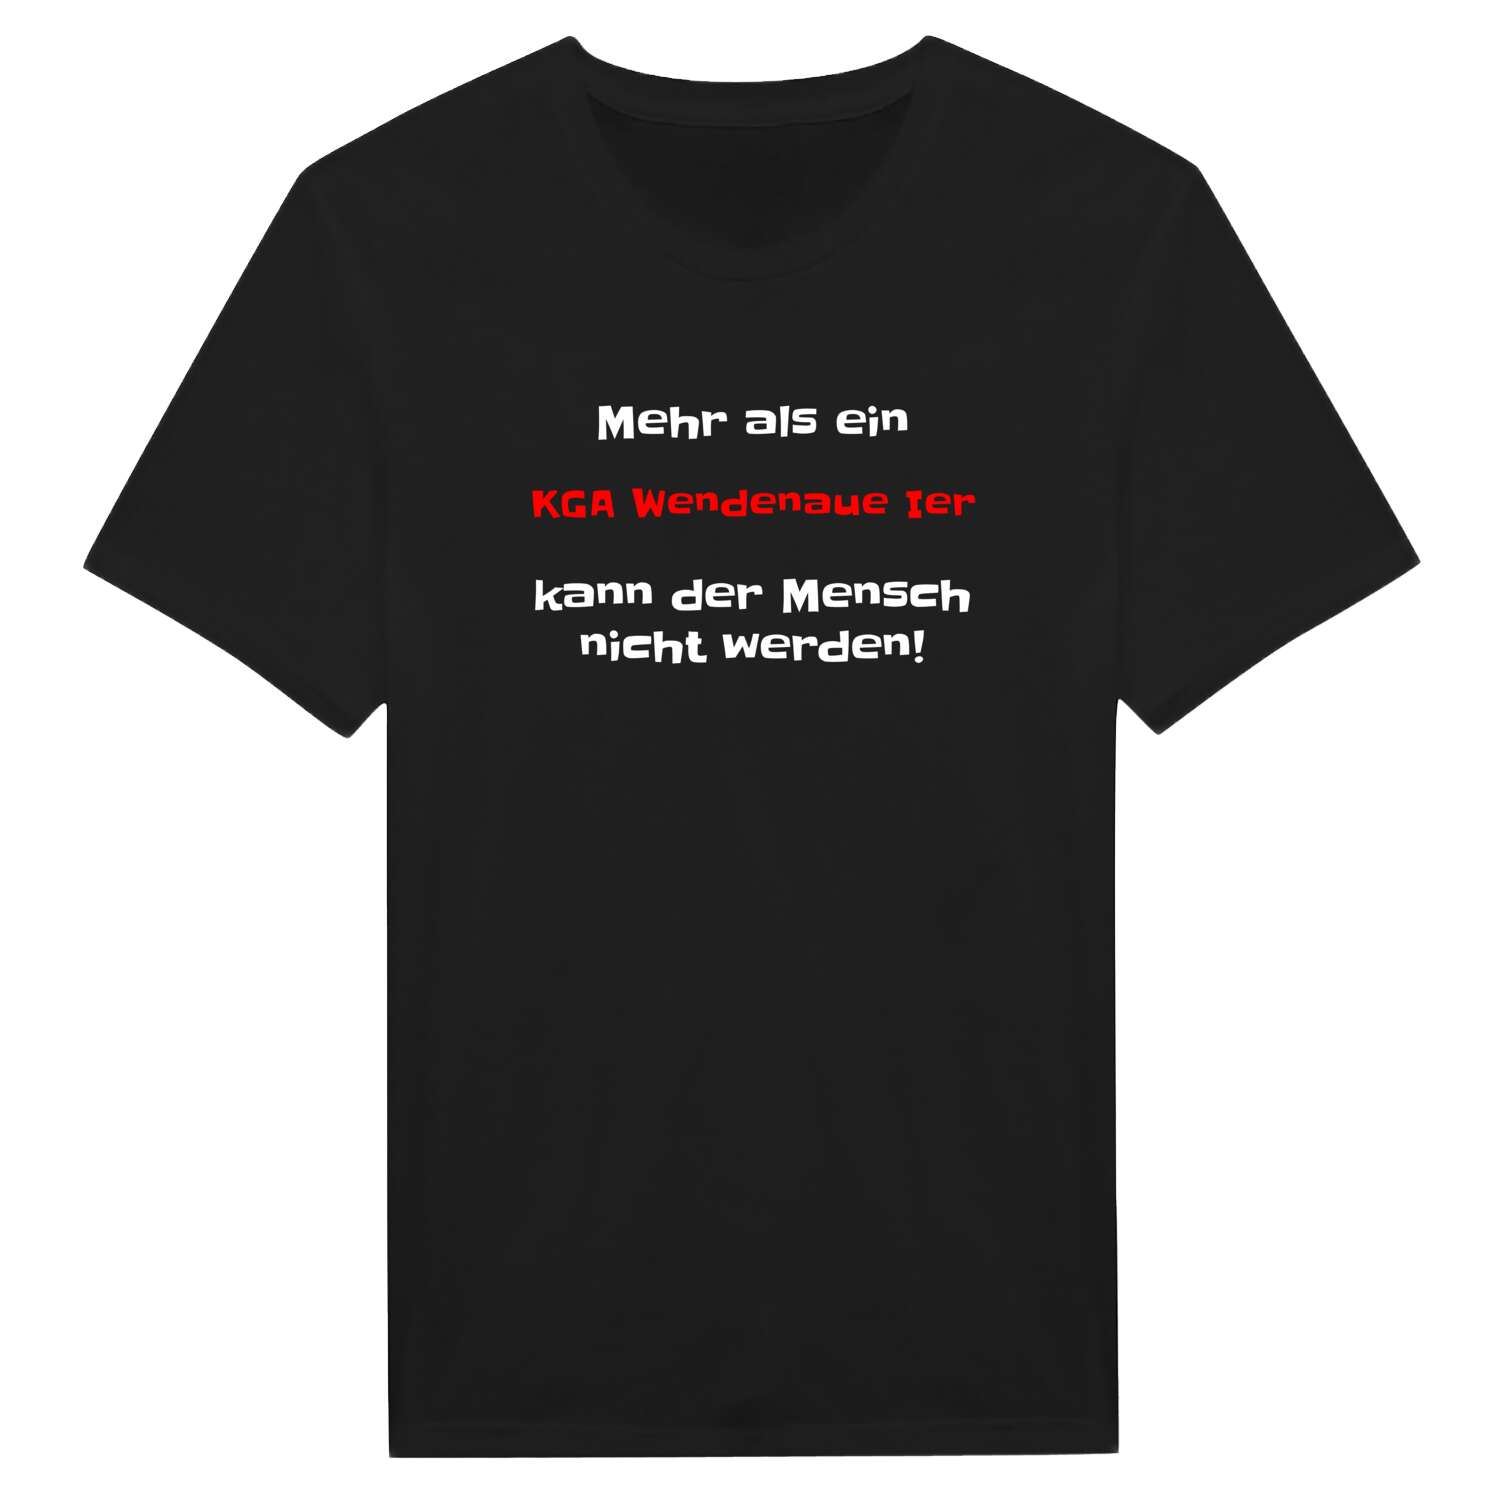 KGA Wendenaue I T-Shirt »Mehr als ein«